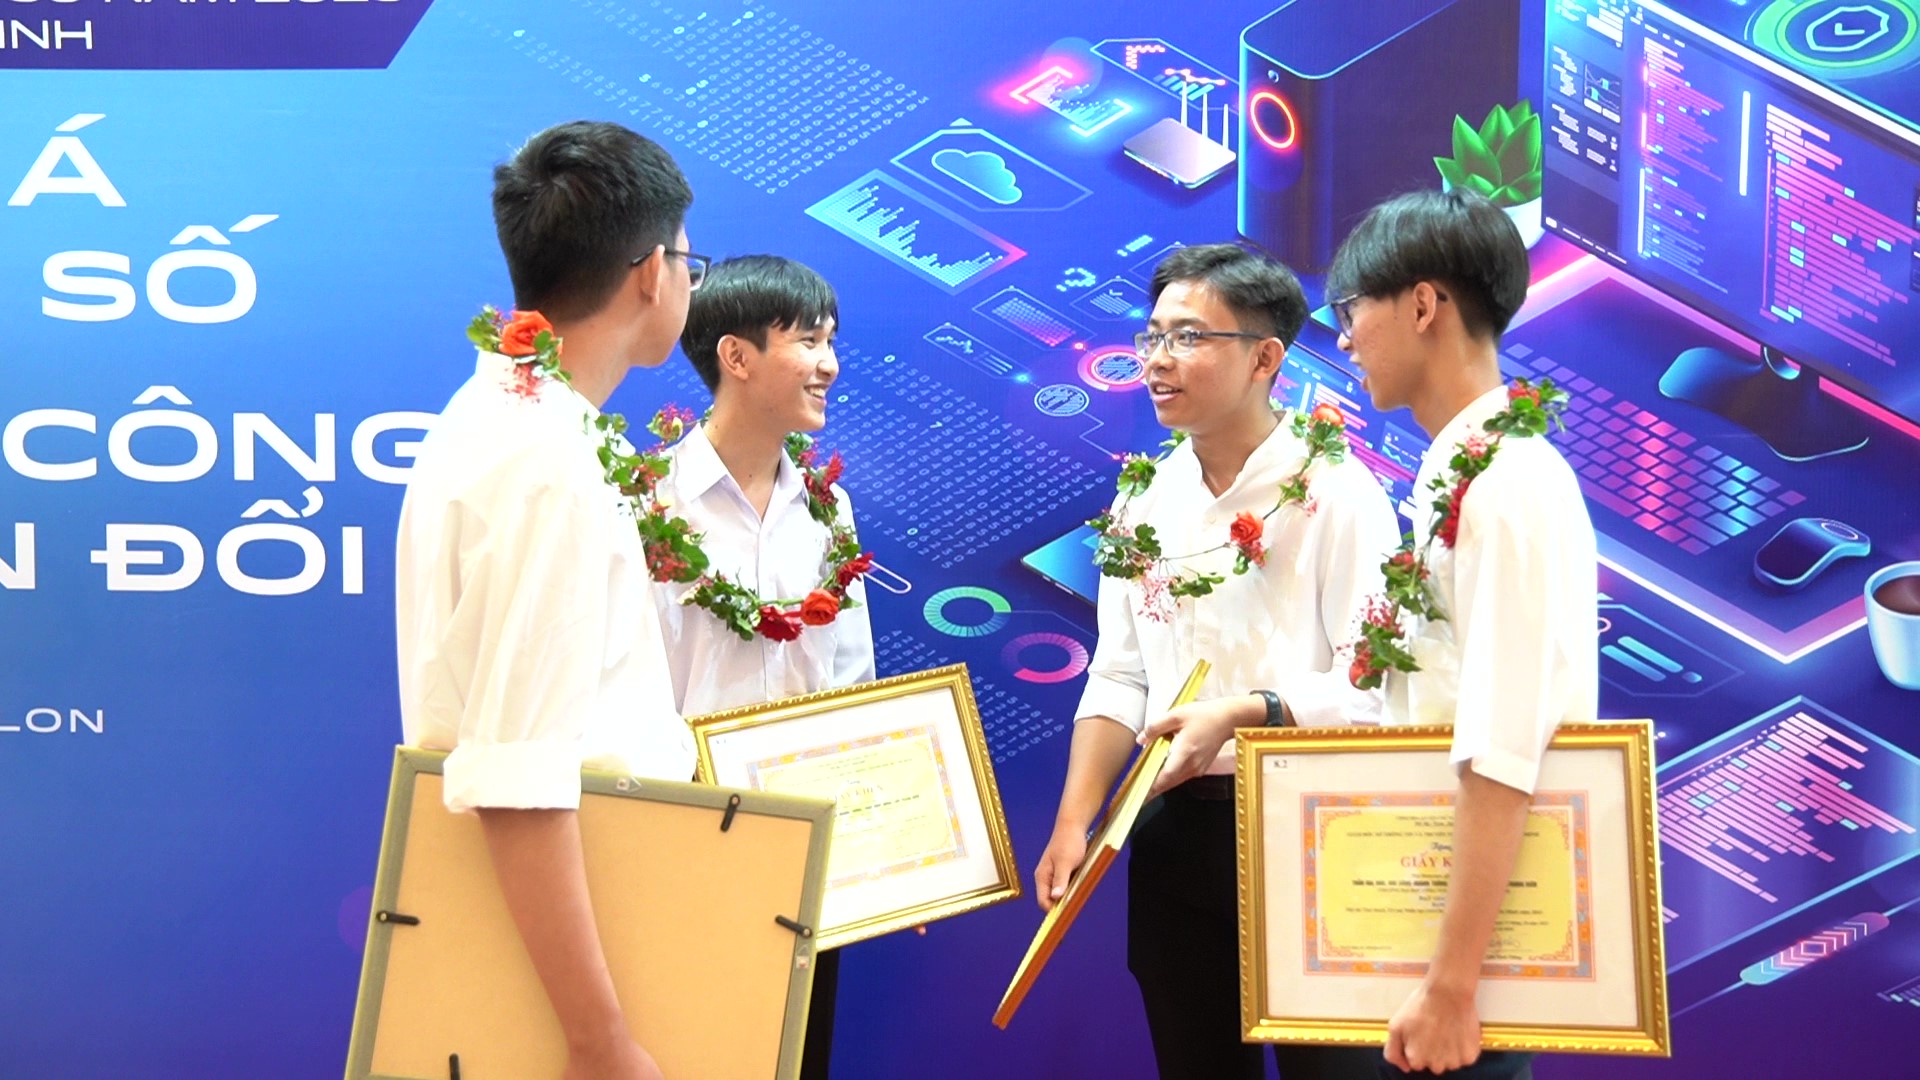 Đi thi lấy kinh nghiệm, nhóm sinh viên UIT giành giải nhất về trí tuệ nhân tạo  - Ảnh 1.